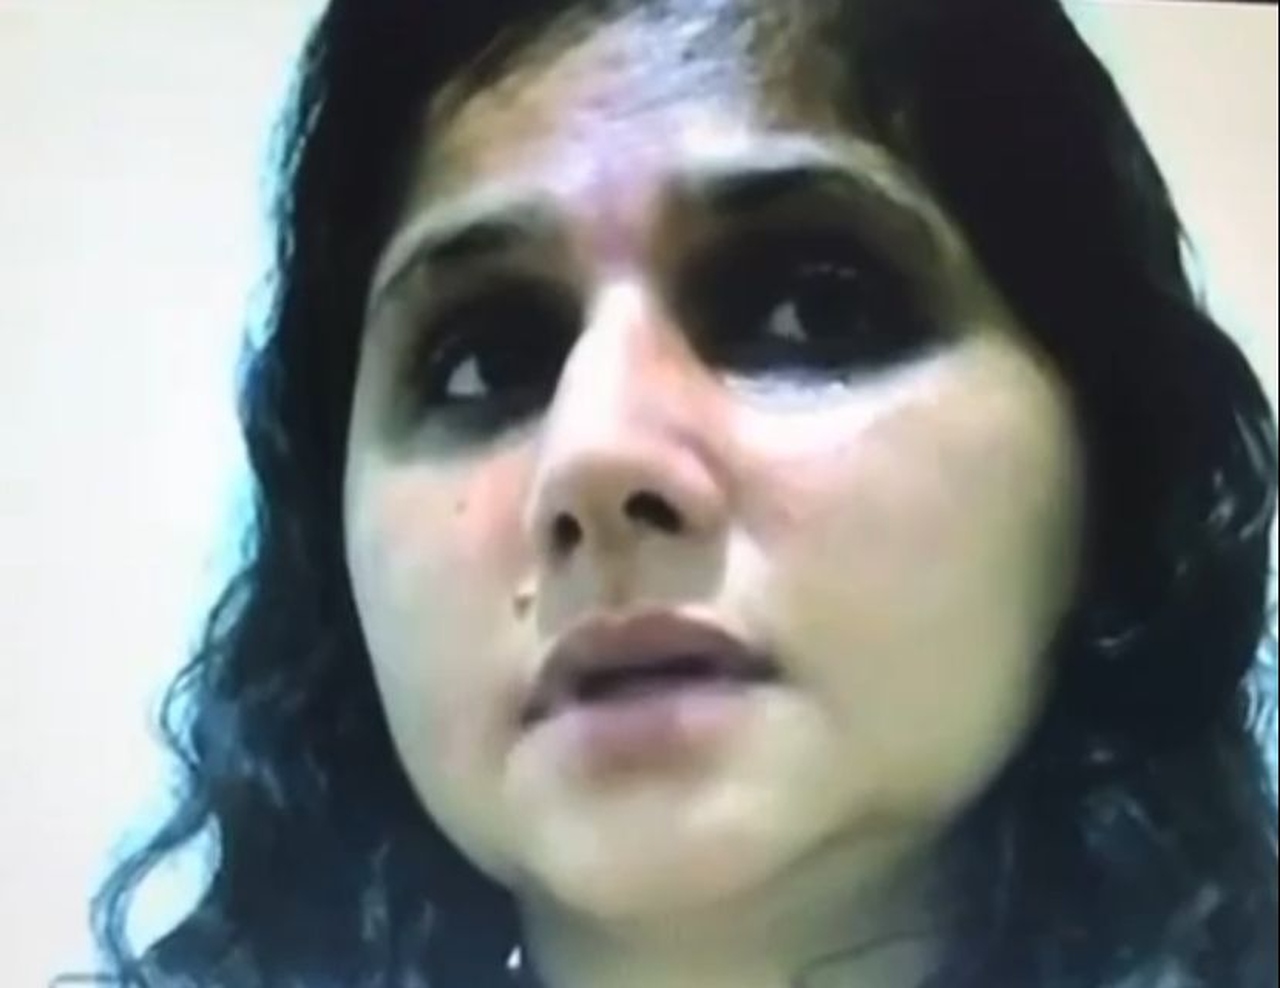 [vídeo] Jovem que matou mulher e feriu companheiro, em Araguaína, relata violência doméstica antes do crime; ASSISTA O DEPOIMENTO